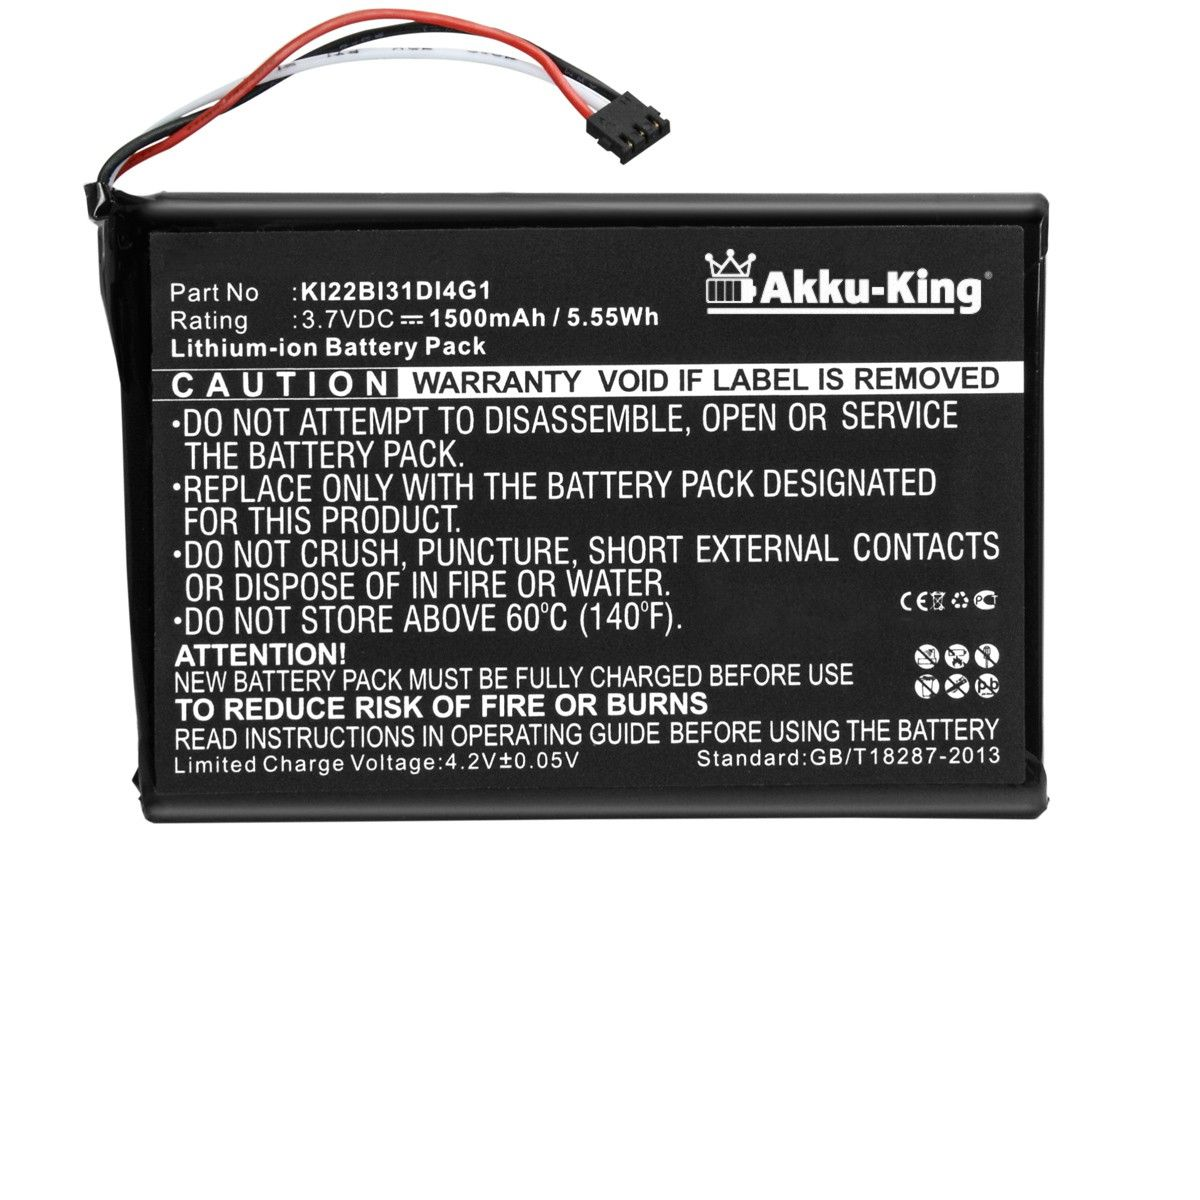 1500mAh AKKU-KING mit kompatibel 3.7 Li-Ion Garmin Akku Geräte-Akku, Volt, KI22BI31DI4G1